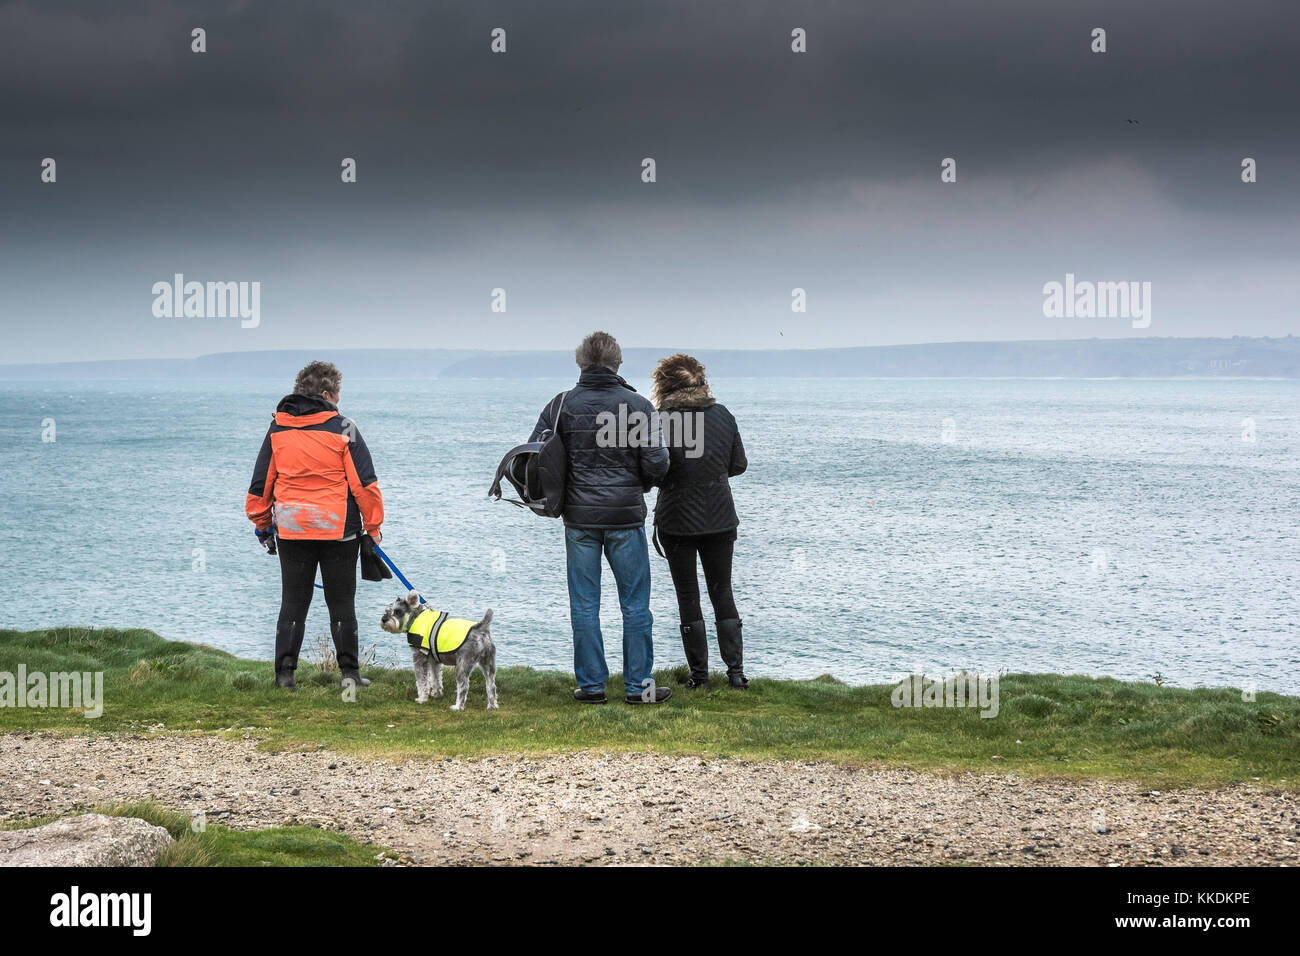 Wetter in Großbritannien - Menschen stehen auf Klippen über dem Meer, während dunkle Regenwolken sich Newquay Cornwall Großbritannien nähern. Stockfoto